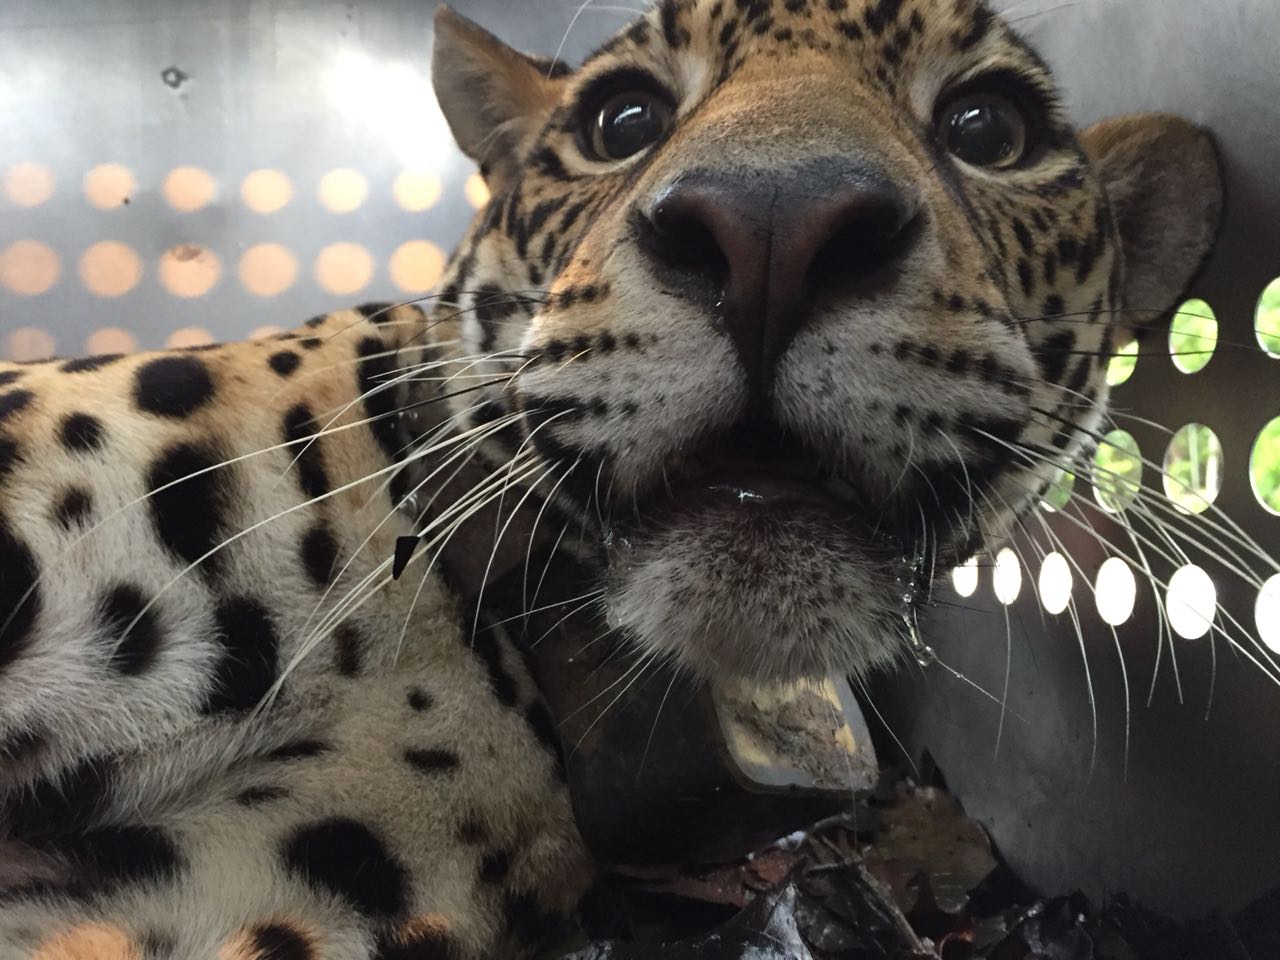 La jaguar D´ yaira, después de un largo proceso de rehabilitación en Parque Turístico Nueva Loja, ha sido trasladada hasta el Parque Nacional Yasuní.